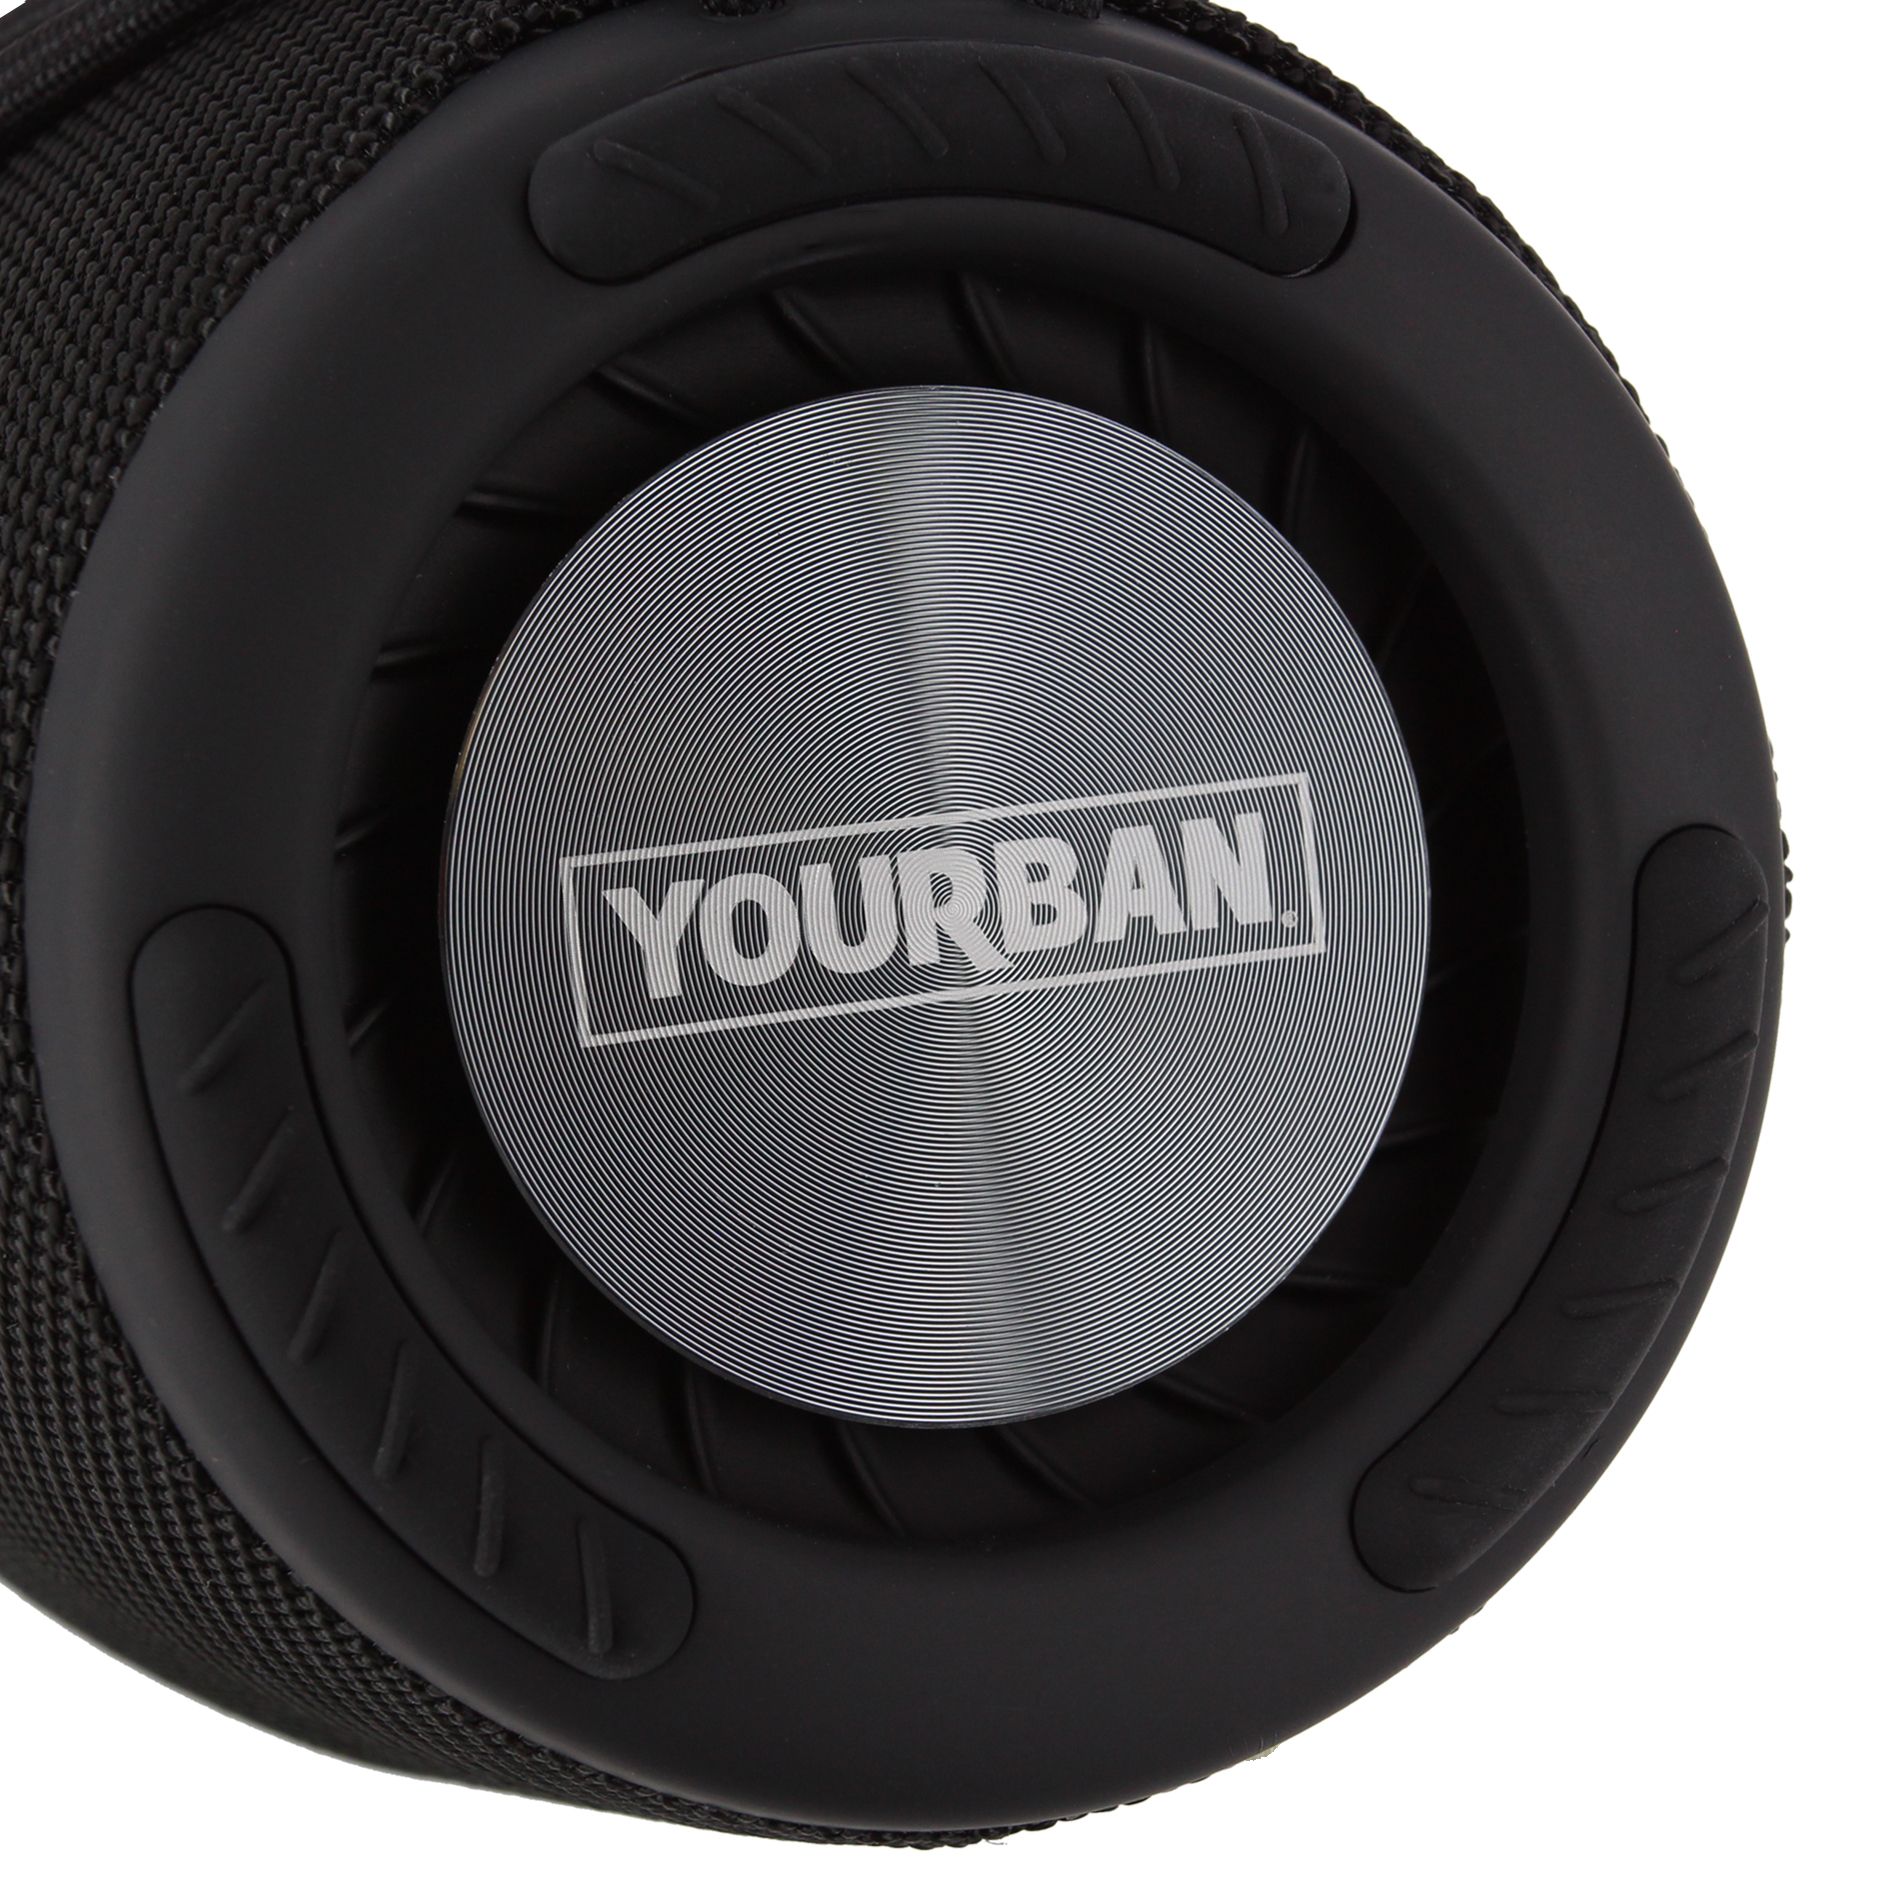 Yourban Getone 45 Black - Sistema de sonorización portátil - Variation 3